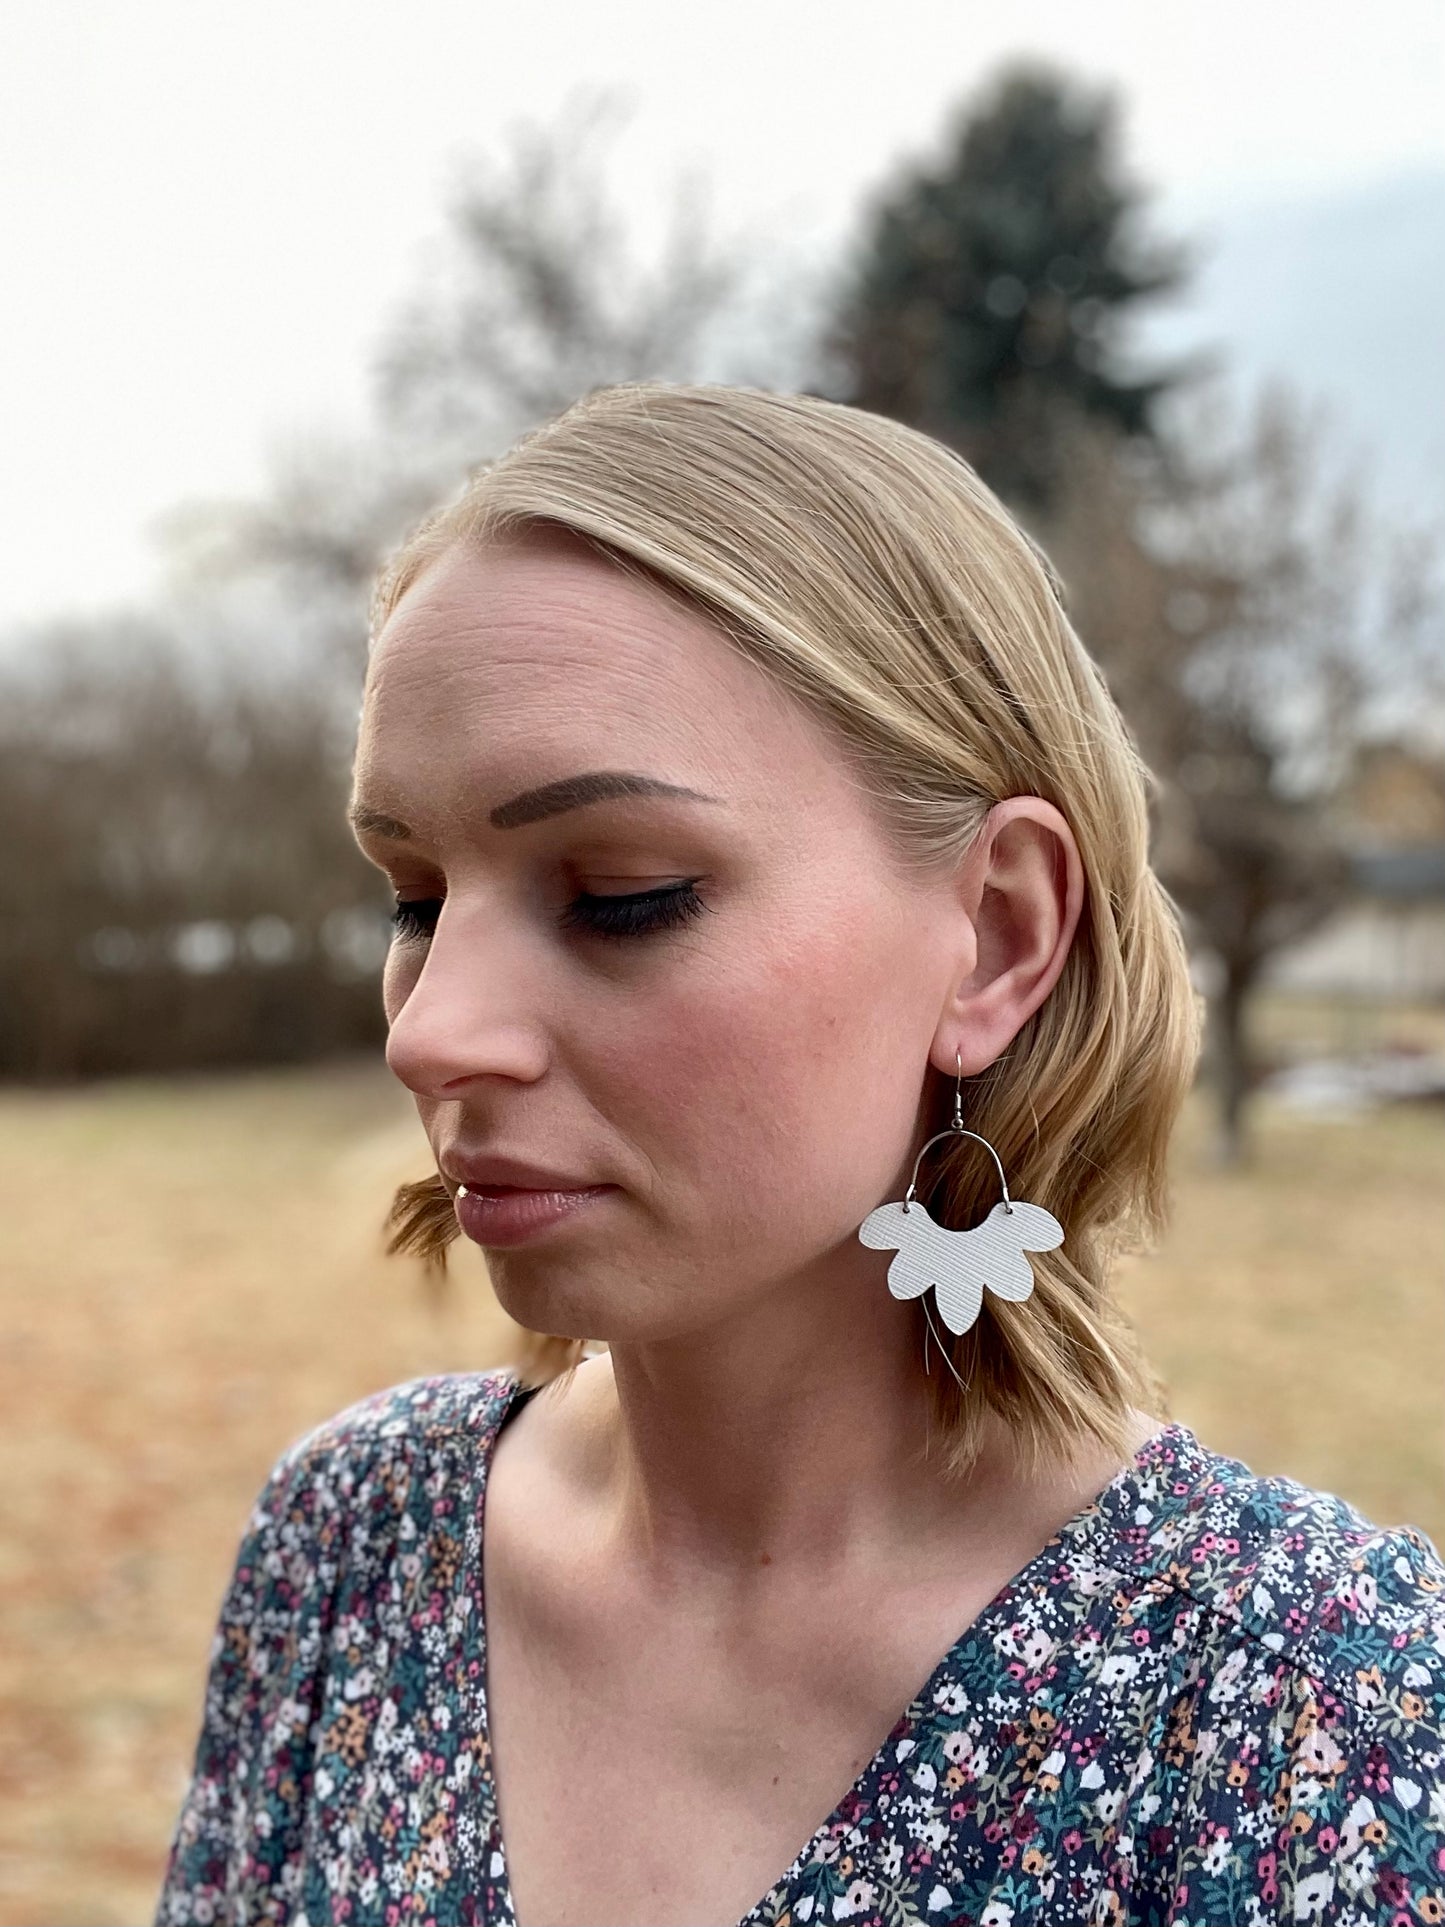 Petite Floral Drop Earrings